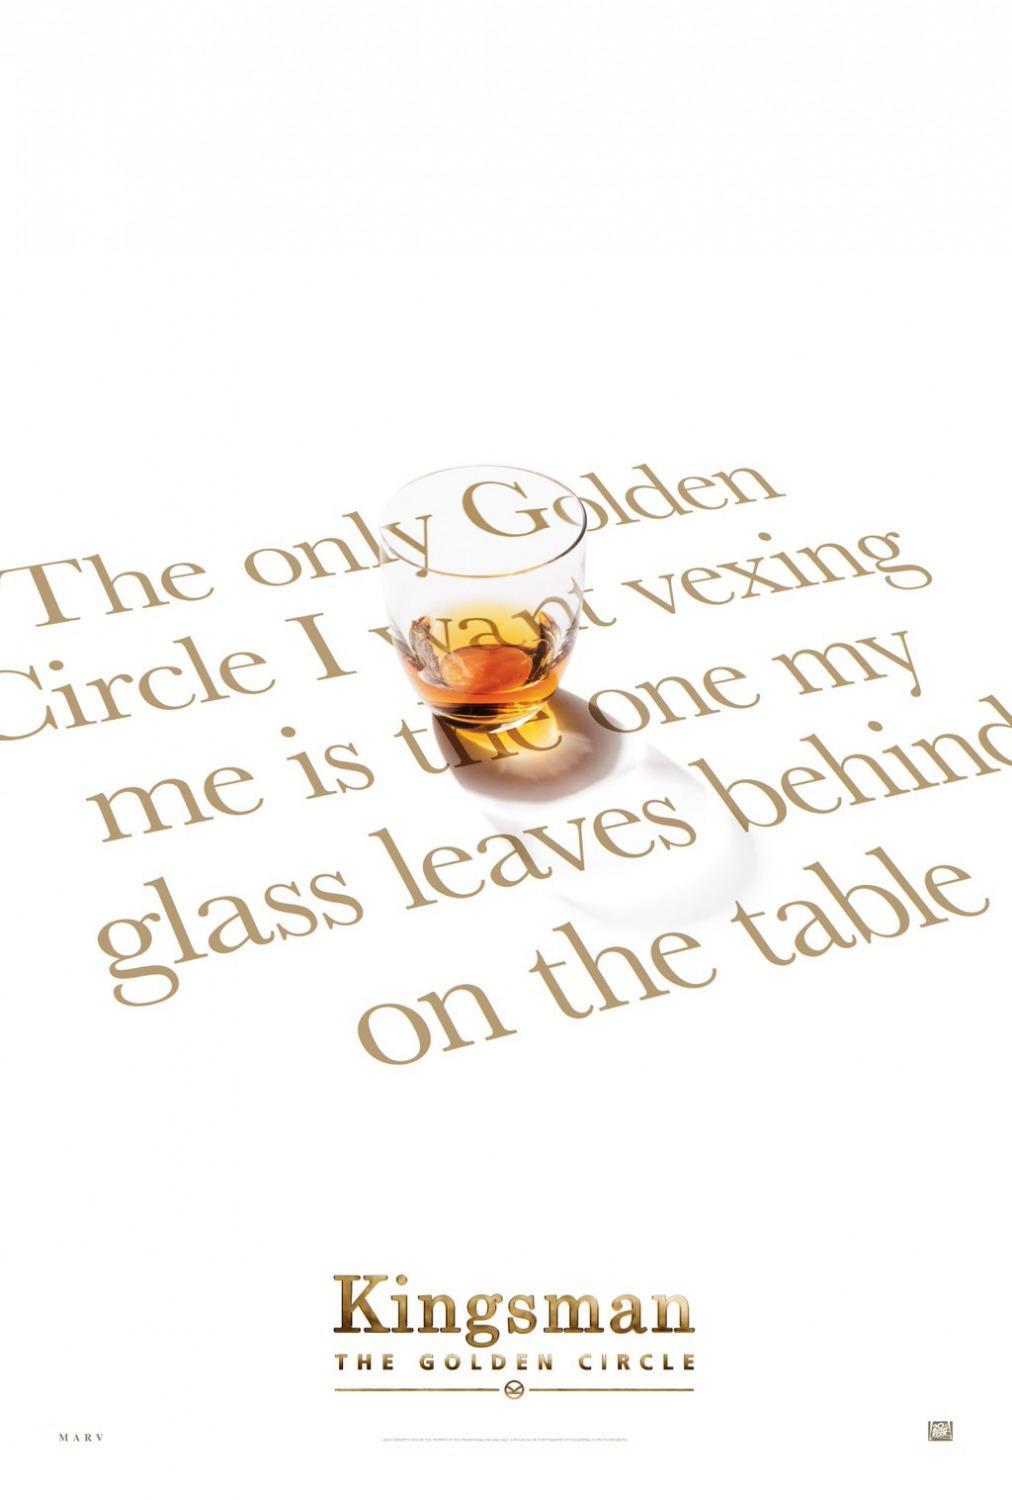 Постер фильма Kingsman: Золотое кольцо | Kingsman: The Golden Circle